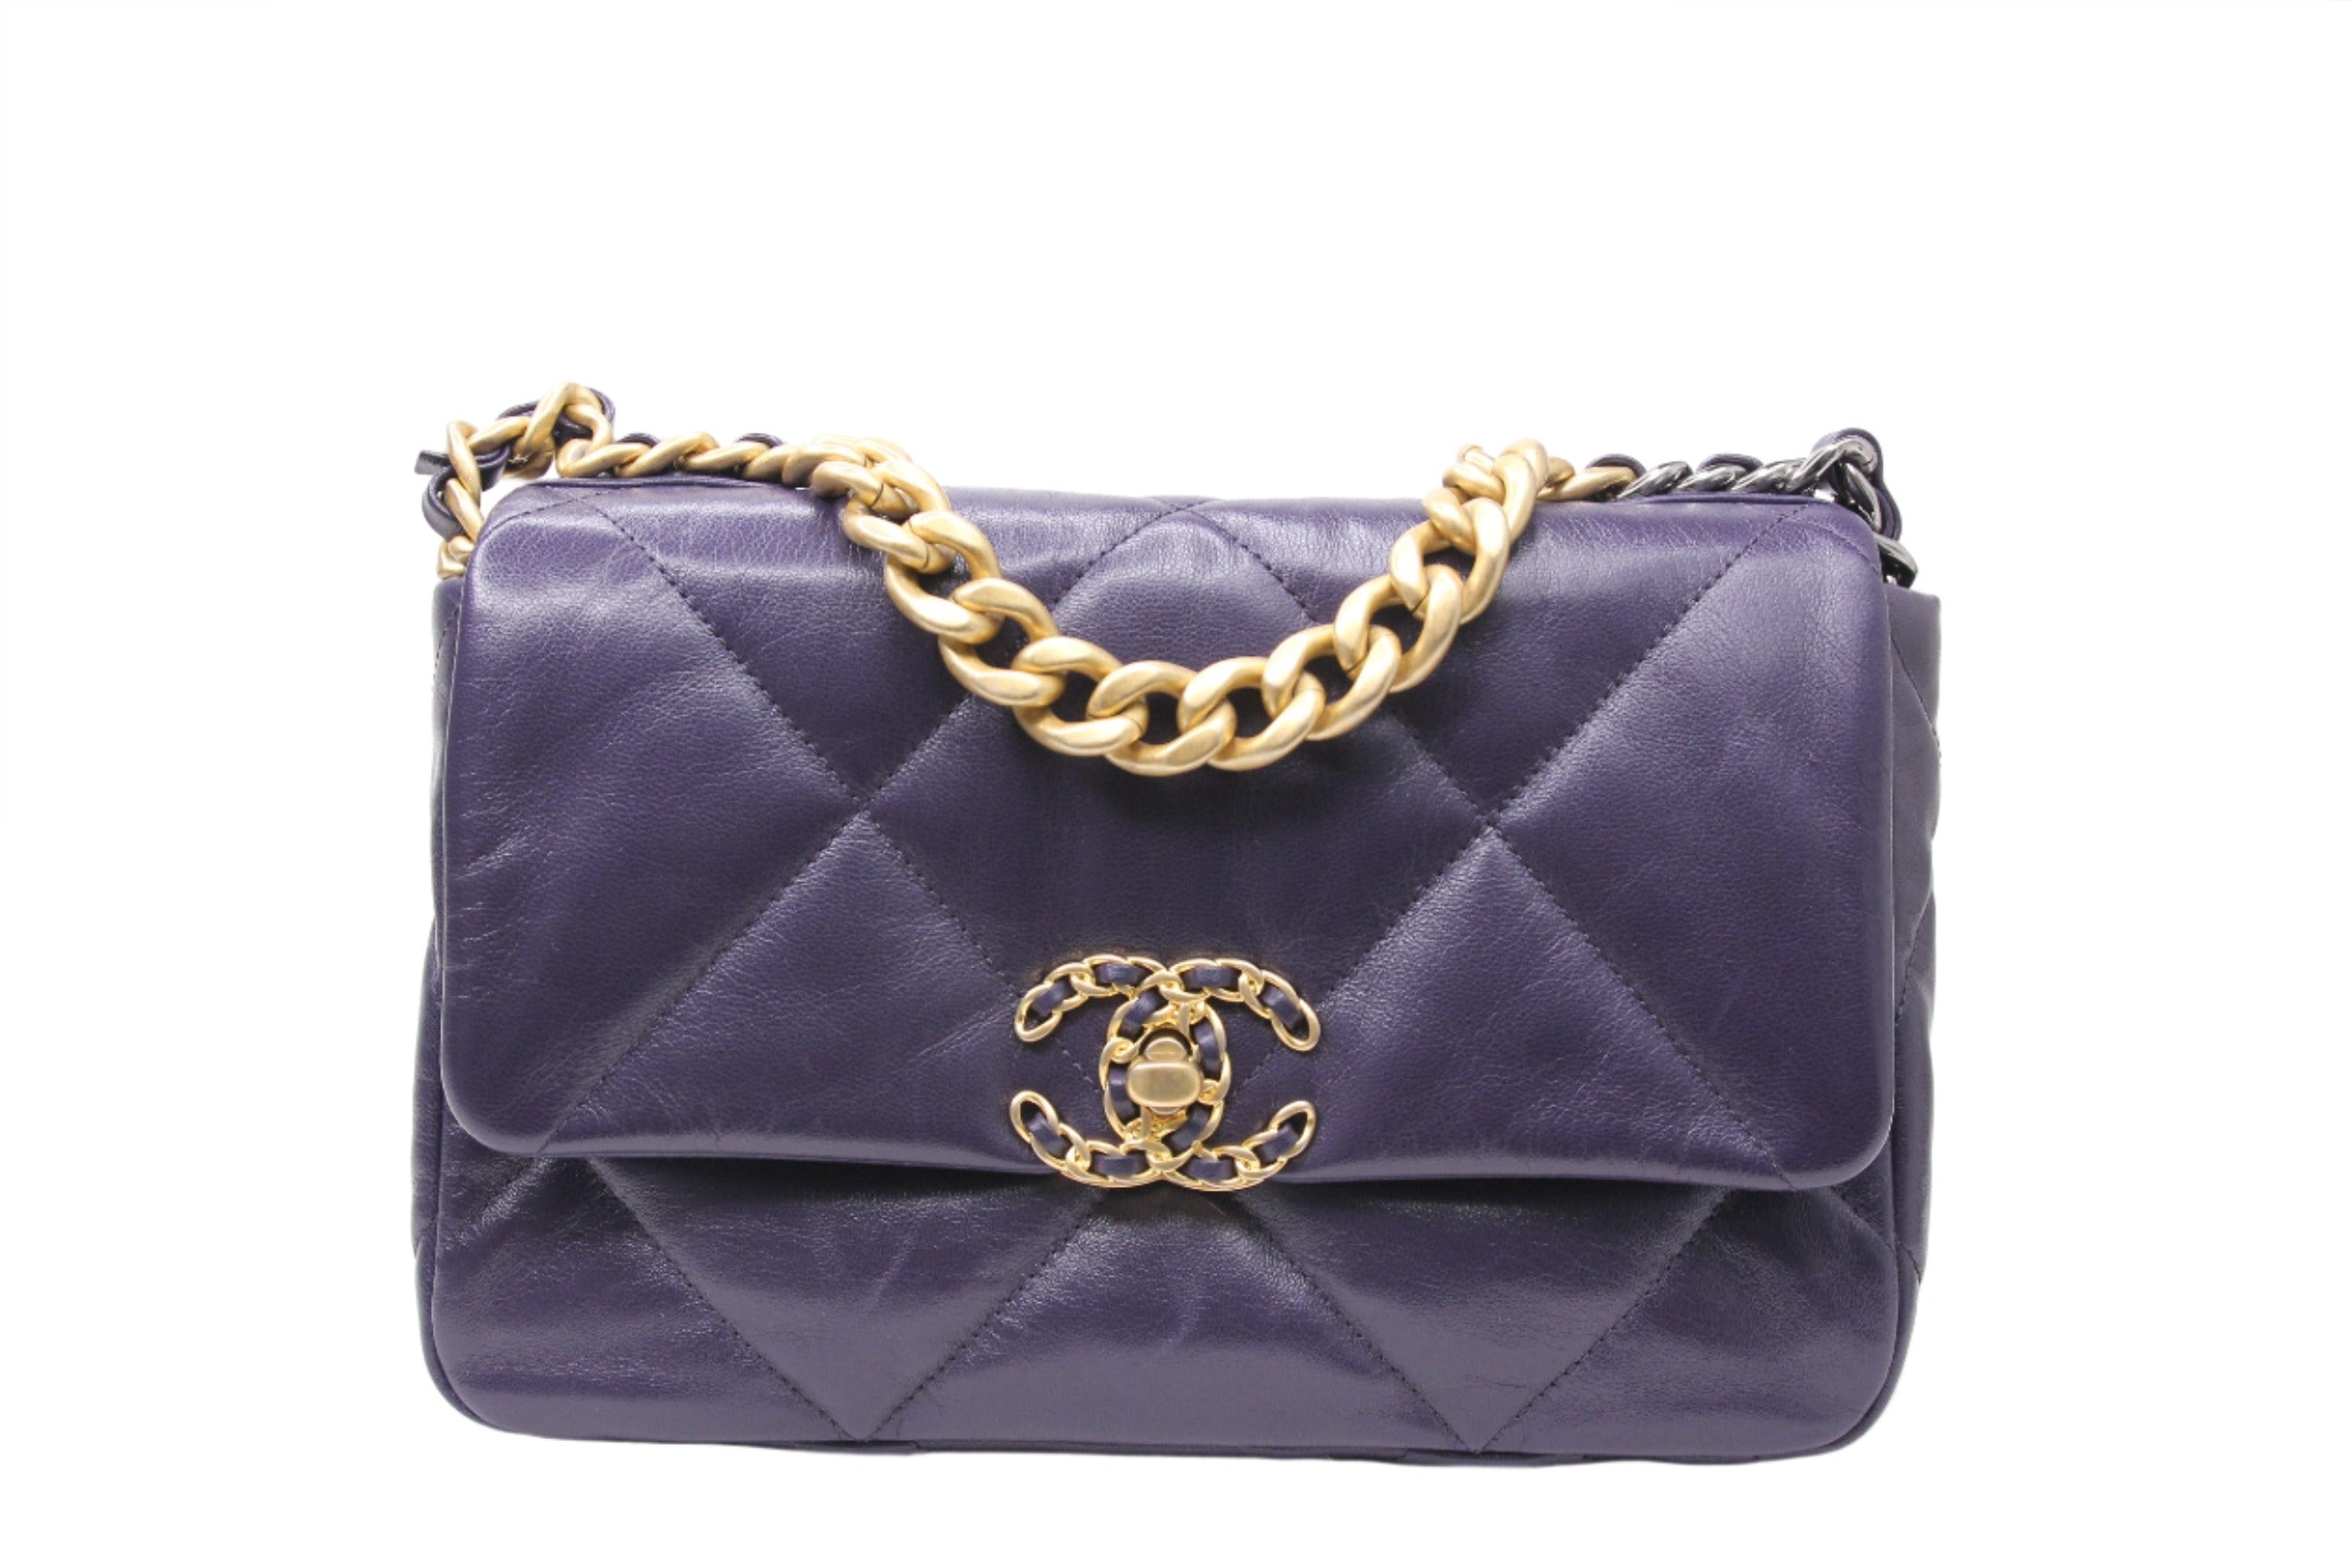 Front of Medium Chanel handbag in finished in violet goatskin